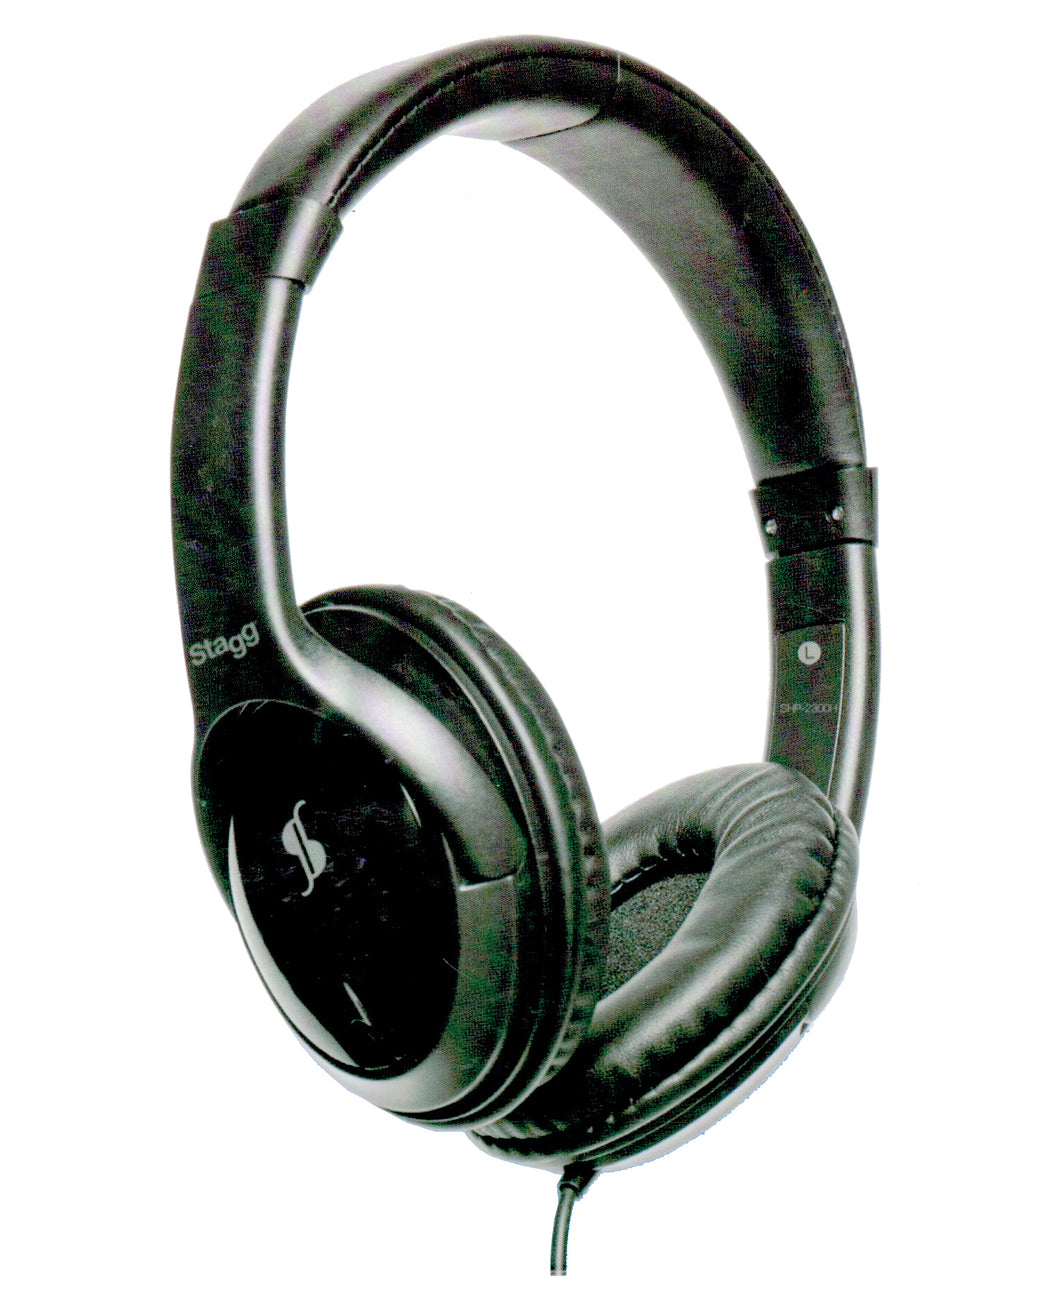 Stagg General Purpose Hi-Fi Stereo Headphones